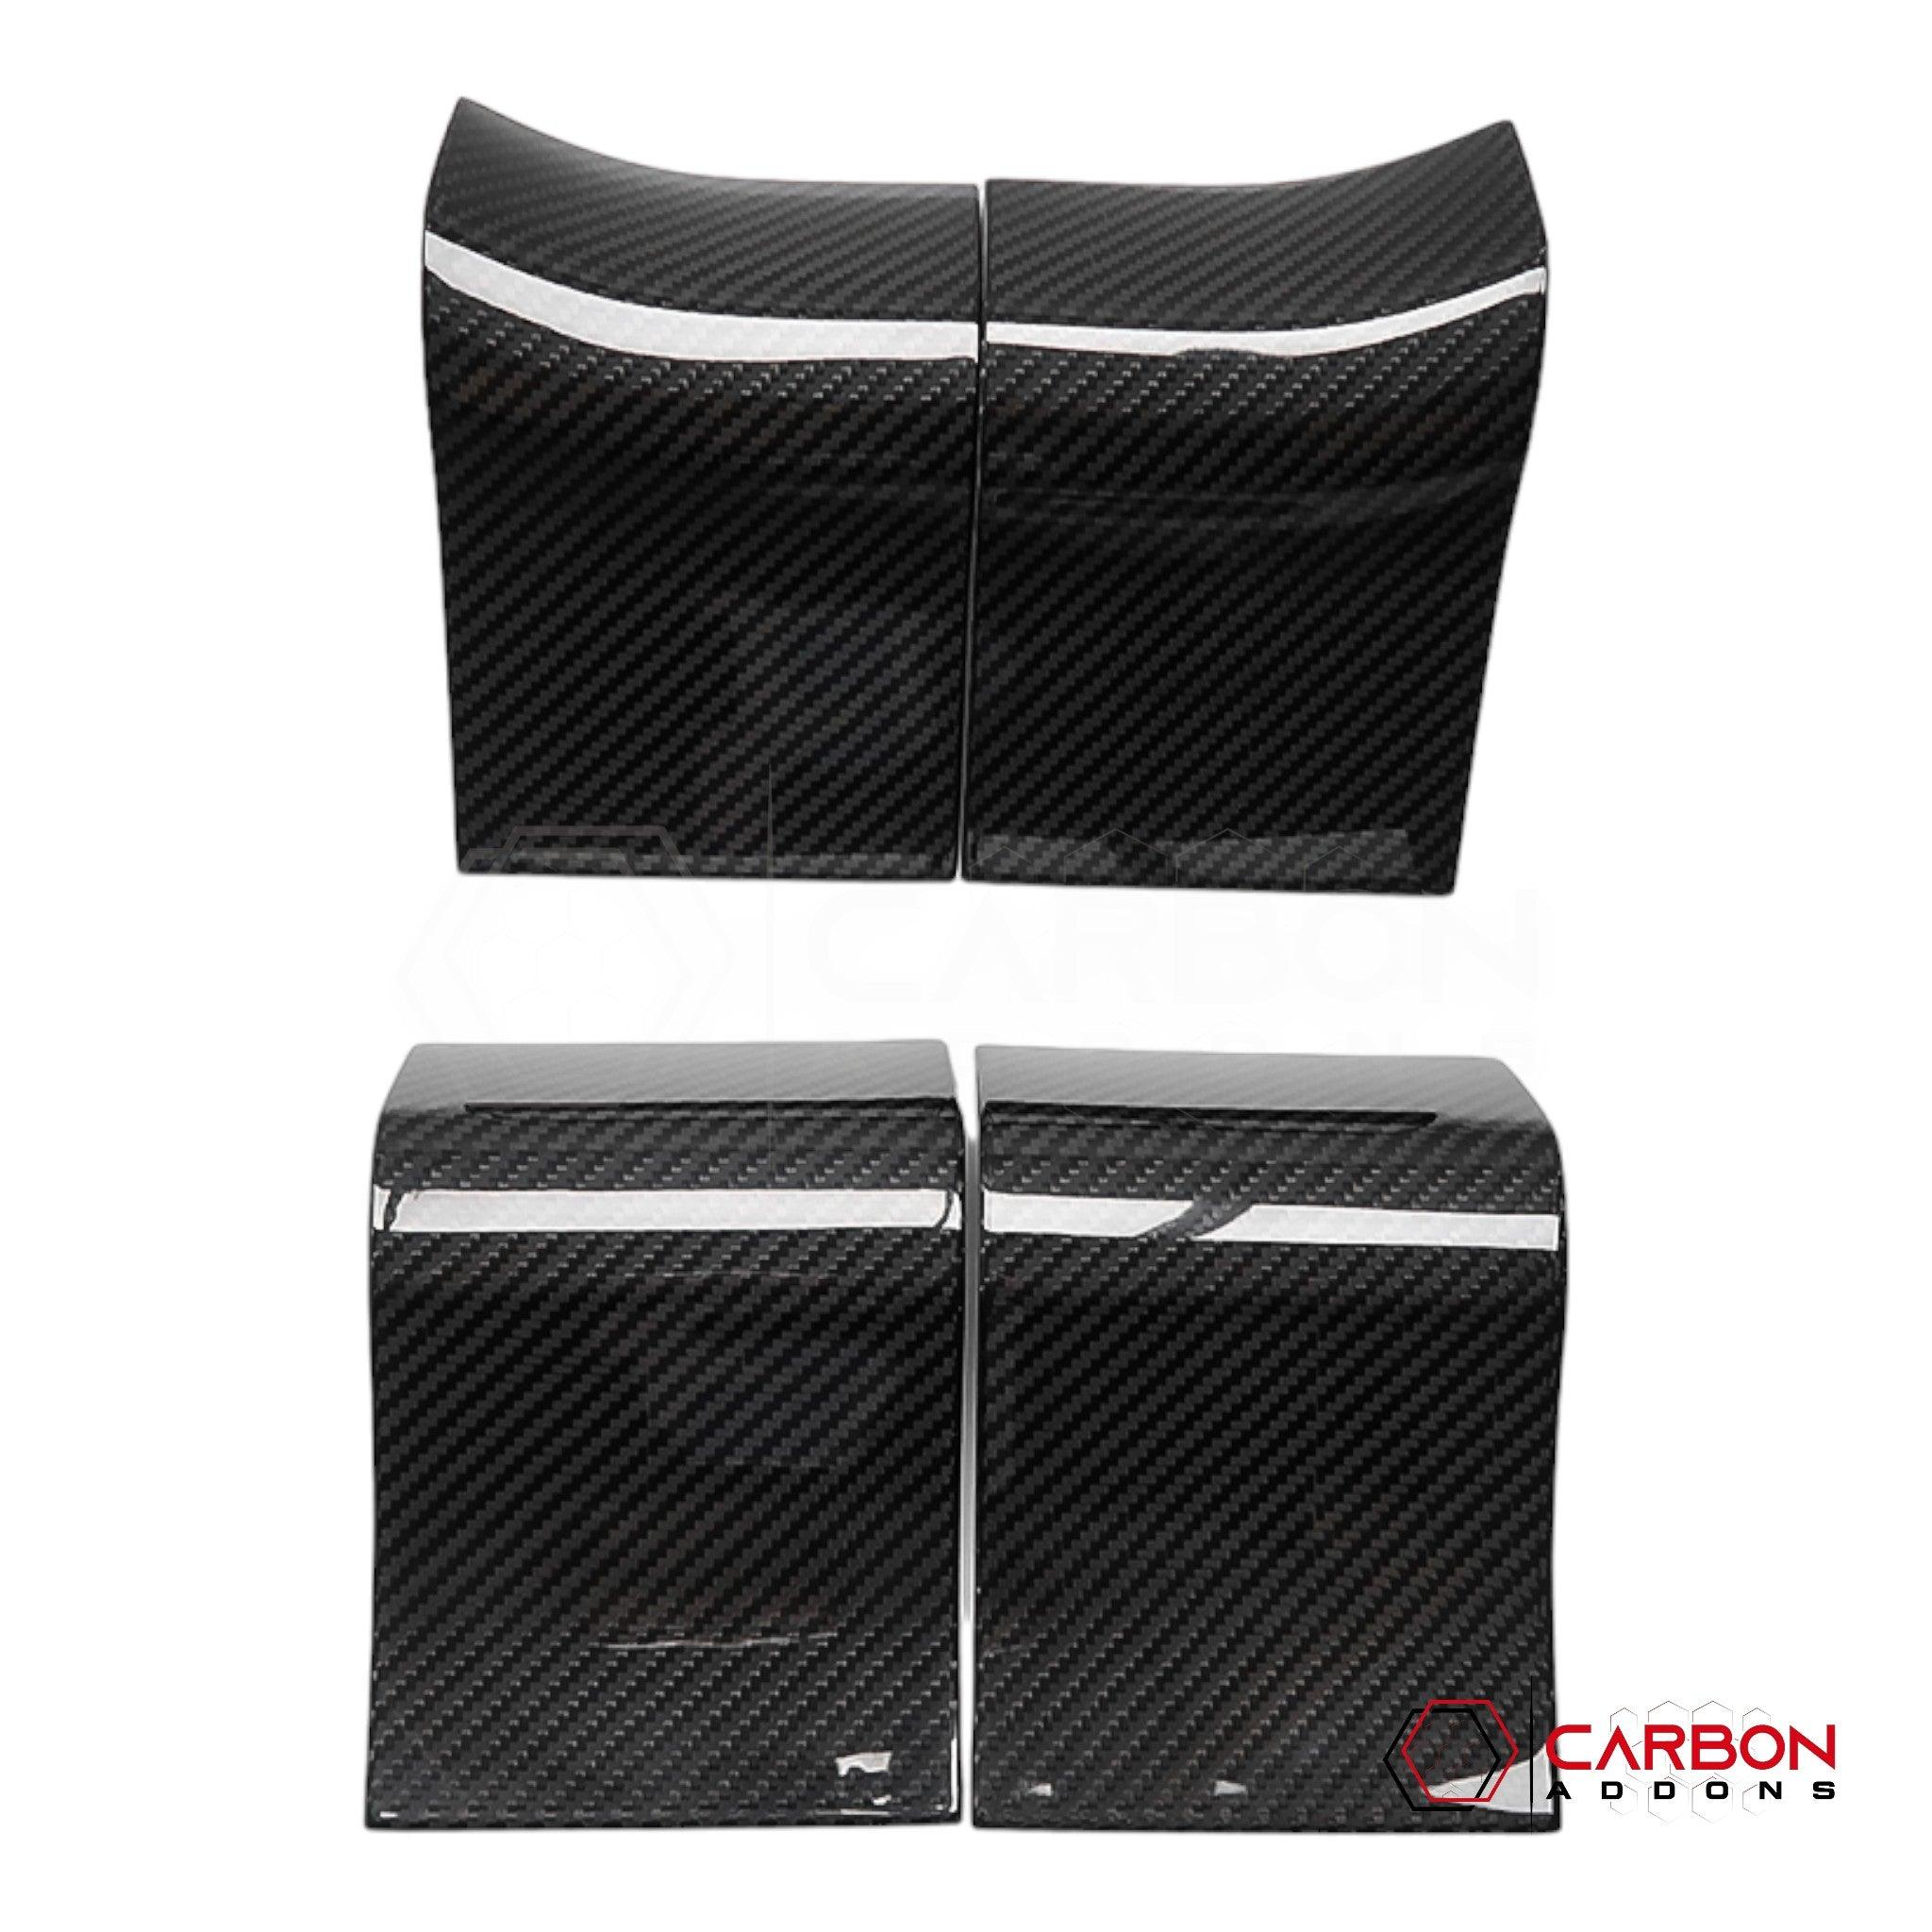 [Coming Soon] Ford F150 2015-2020 Interior Door Handle Trim Hard Carbon Fiber Cover - carbonaddons Carbon Fiber Parts, Accessories, Upgrades, Mods